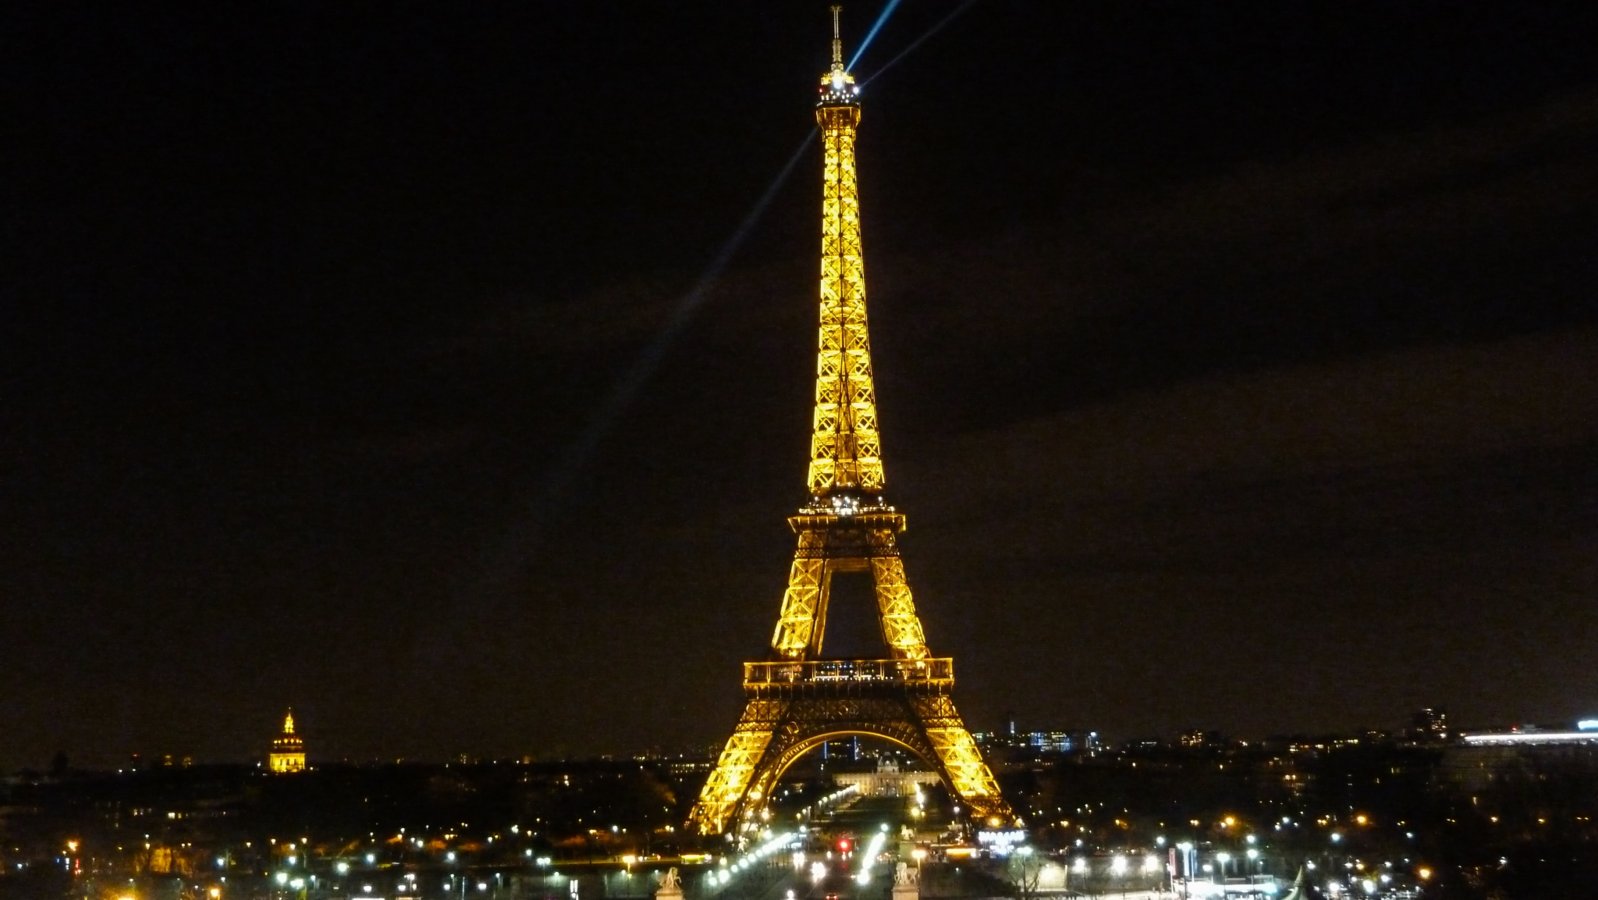 Tour Eiffel - Trocadero